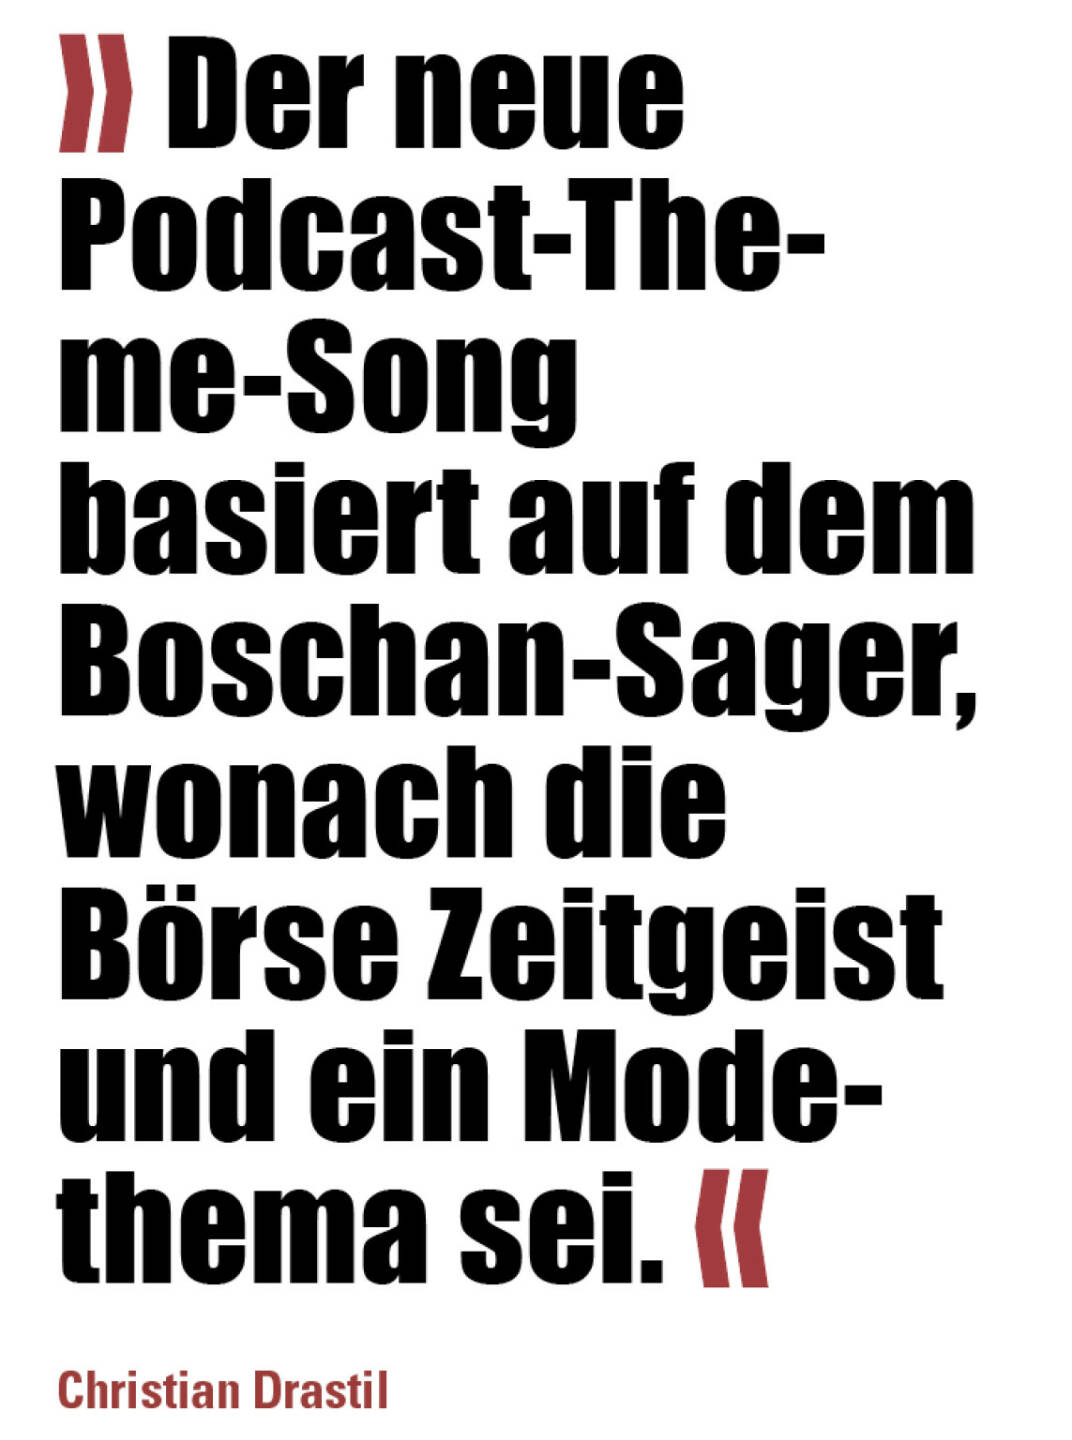 » Der neue Podcast-Theme-Song basiert auf dem Boschan-Sager, wonach die Börse Zeitgeist und ein Mode- thema sei. «
Christian Drastil